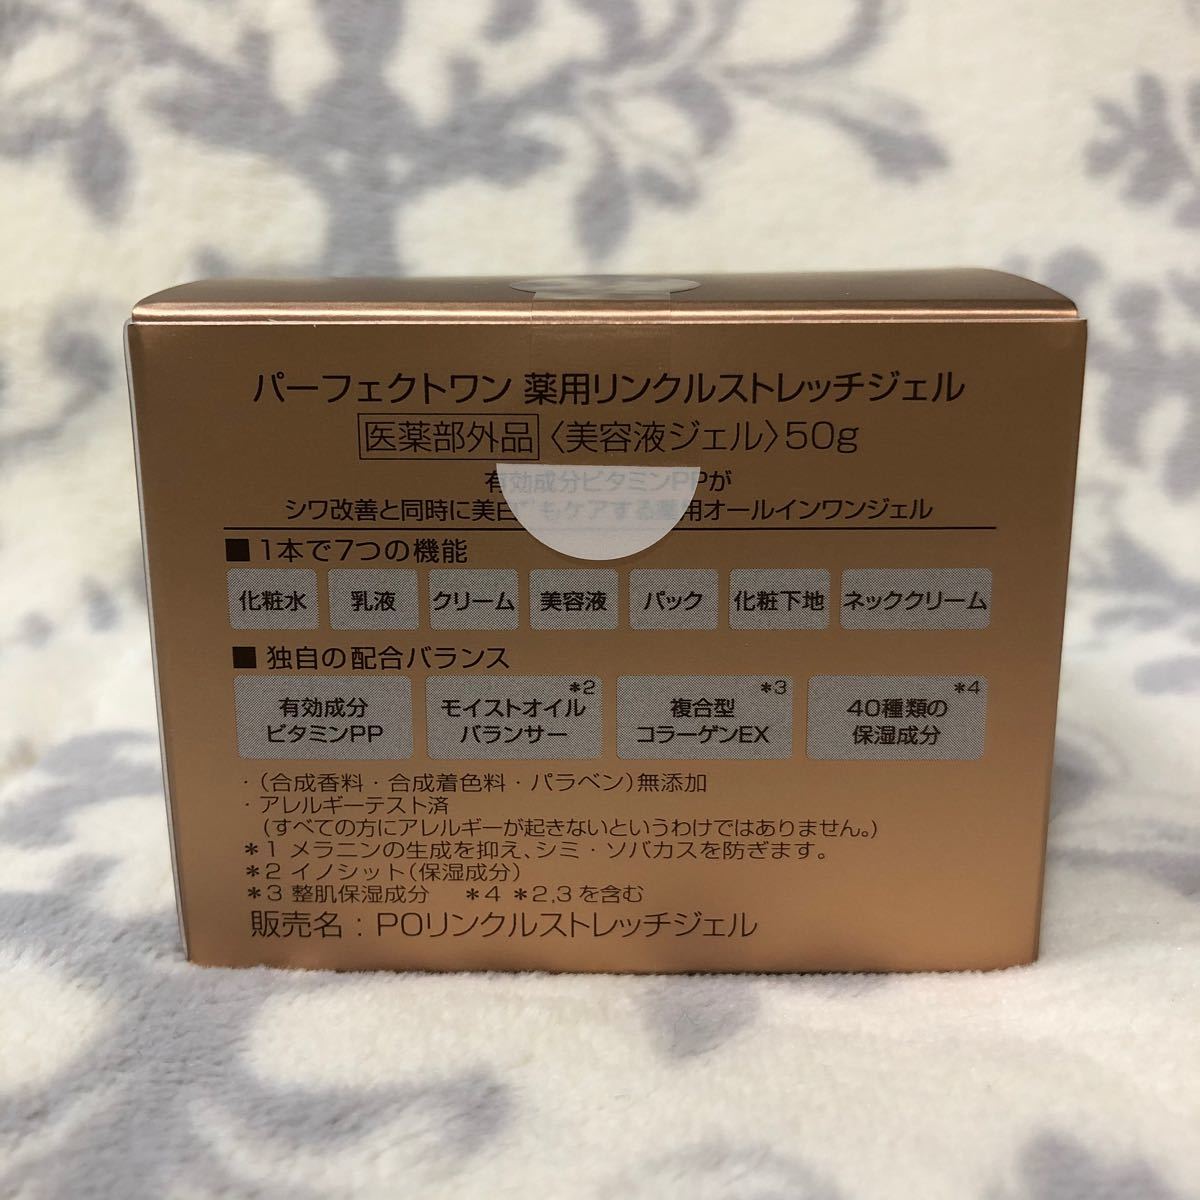 2箱 薬用リンクルストレッチジェル パーフェクトワン 50g シワ改善 美白ケア 新日本製薬 オールインワンジェル ビタミンPP